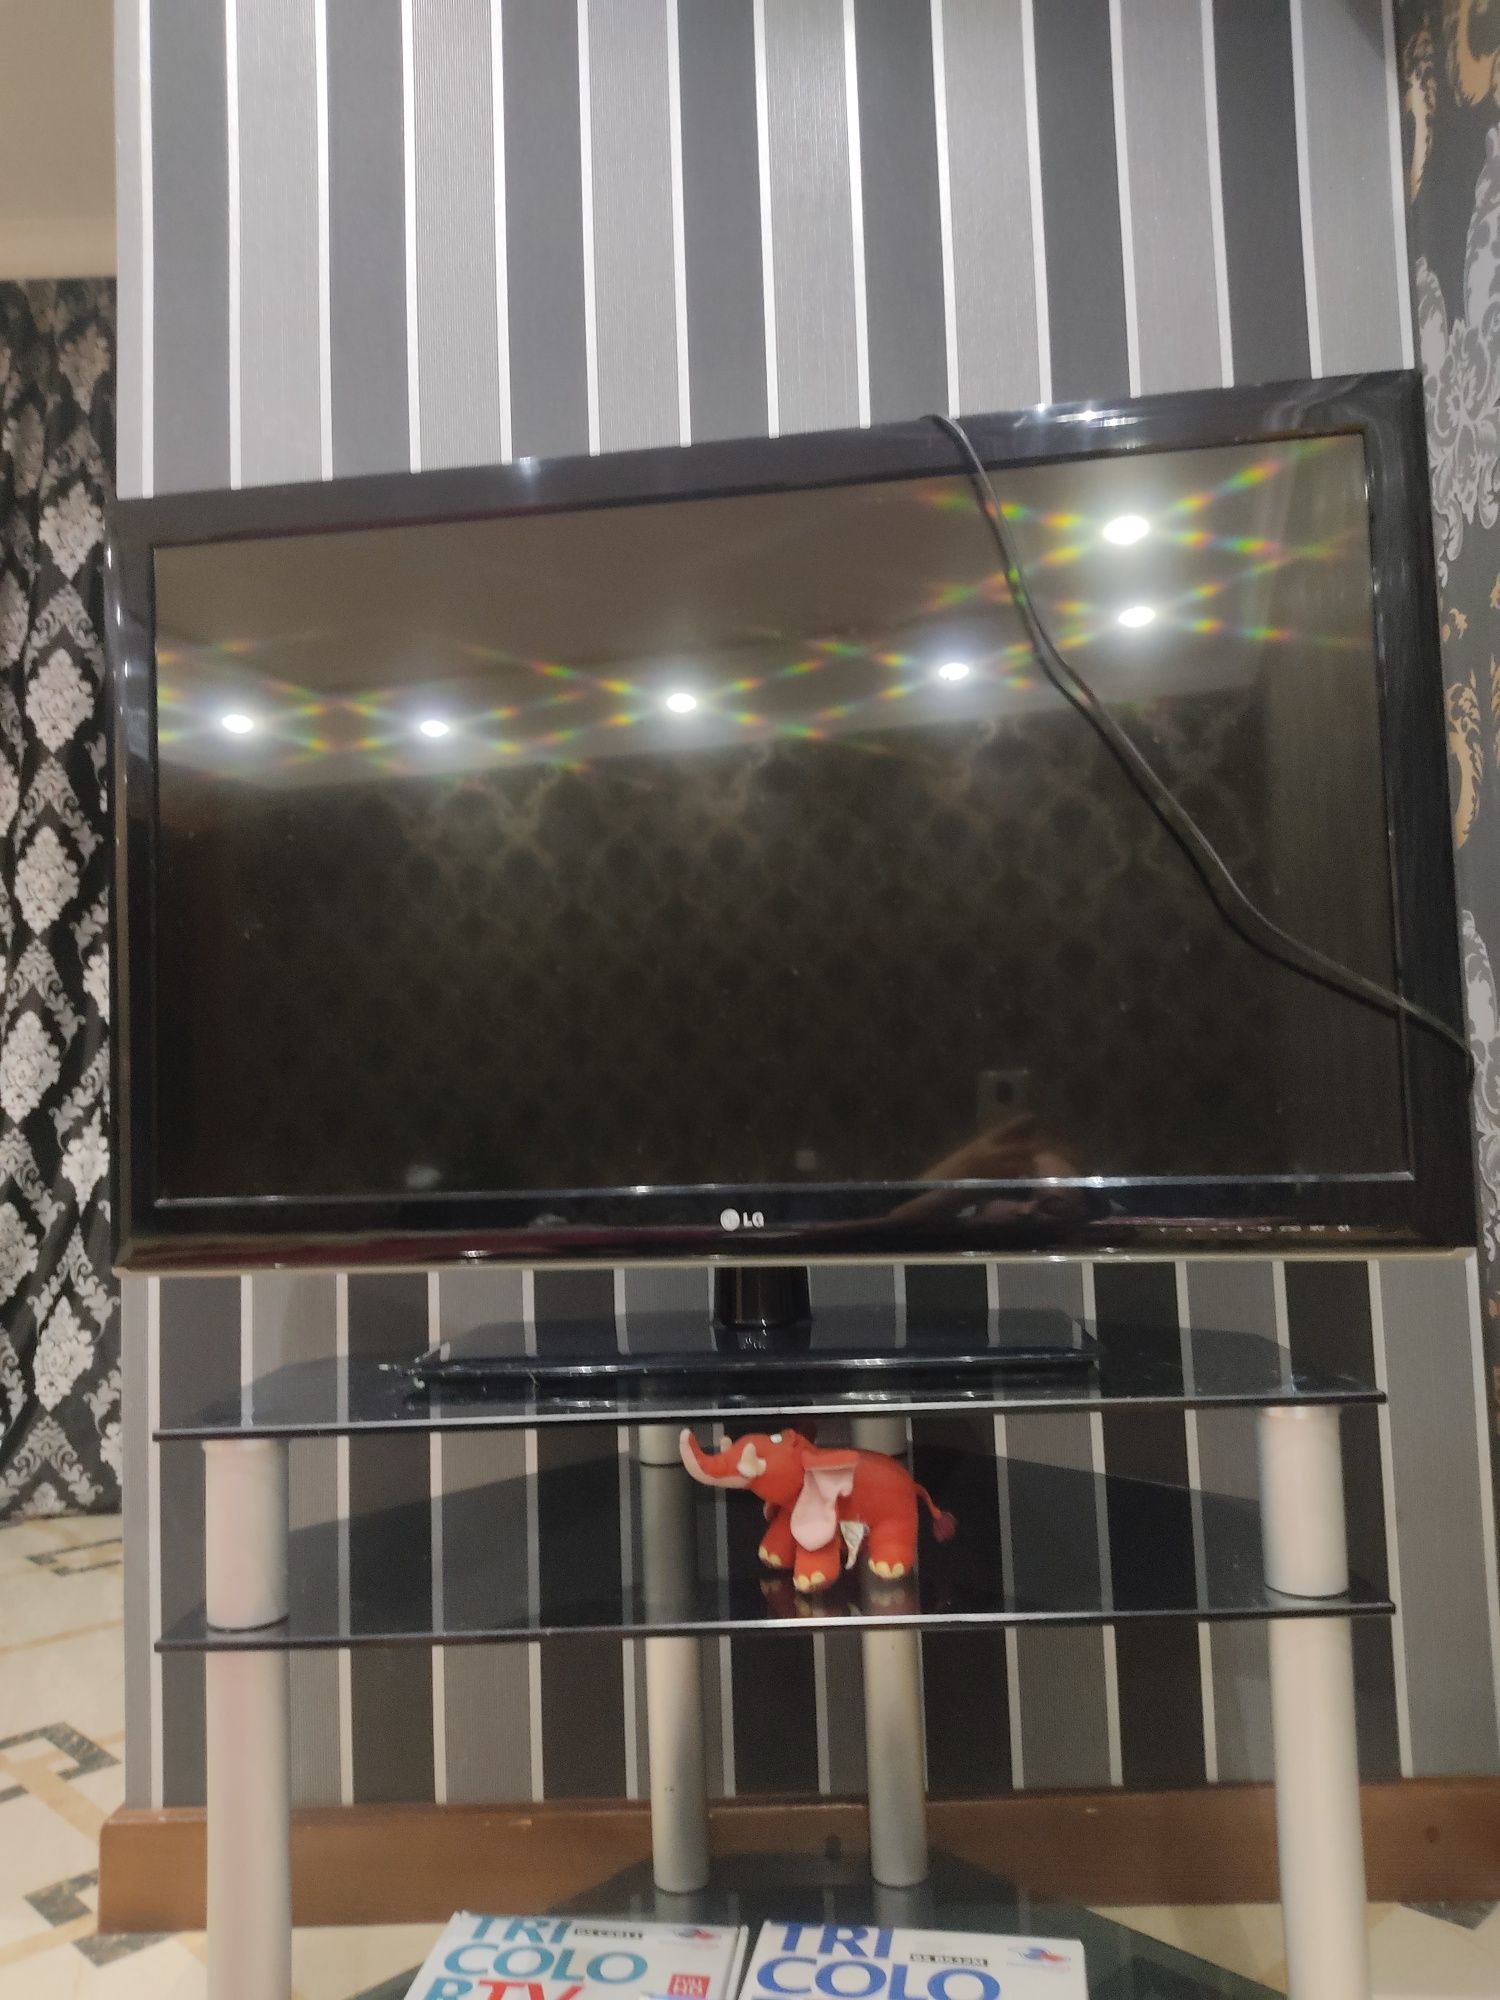 Телевизор LG, размеры 40" 60х105см в отличном состоянии+ полка стекло